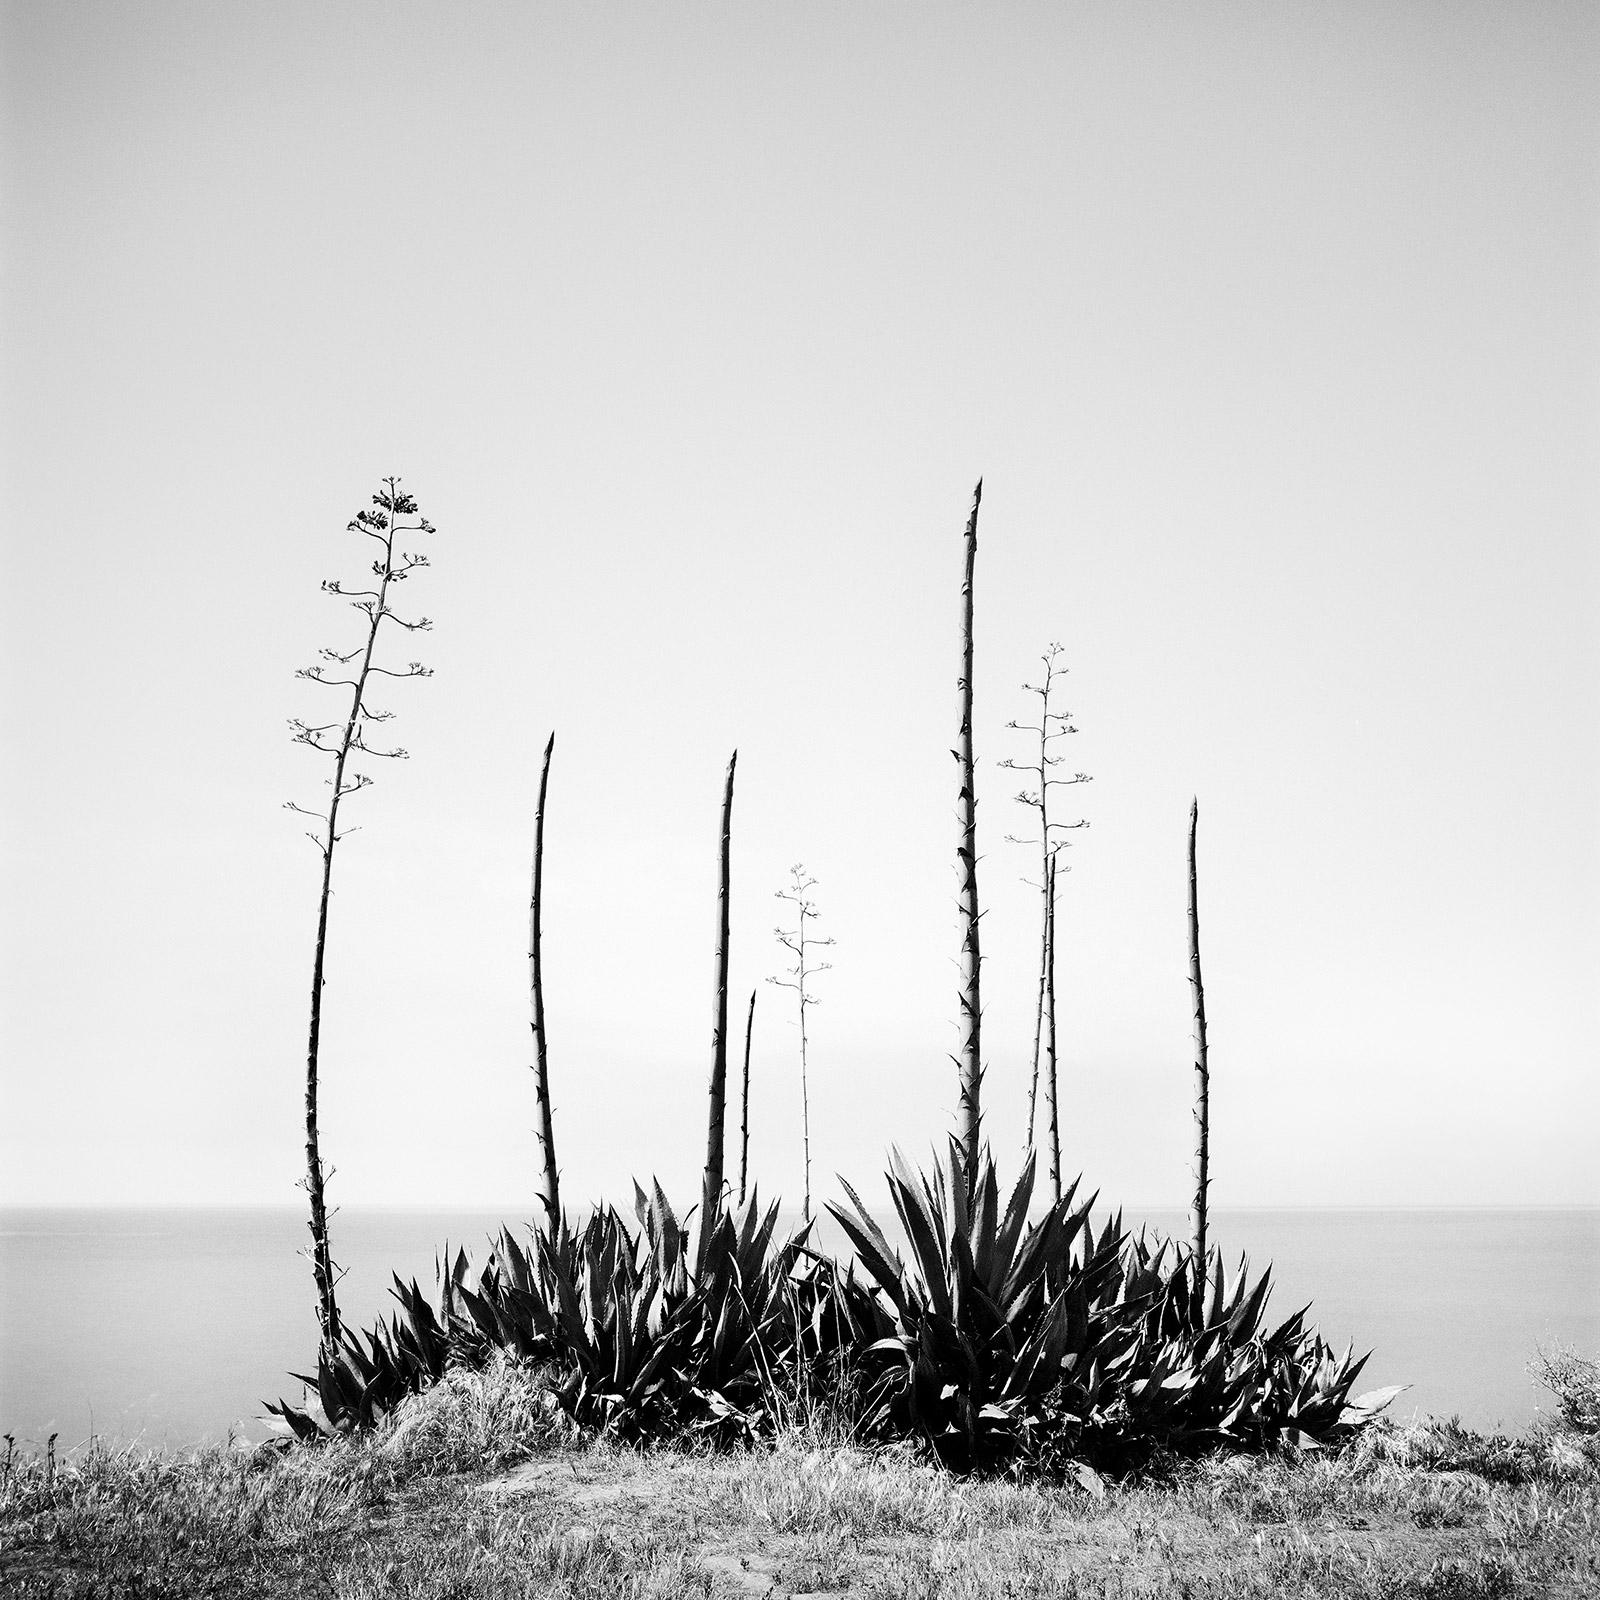 Agave deserti, Meeresansicht, Kalifornien, USA, Schwarz-Weiß-Landschaftsfotografie